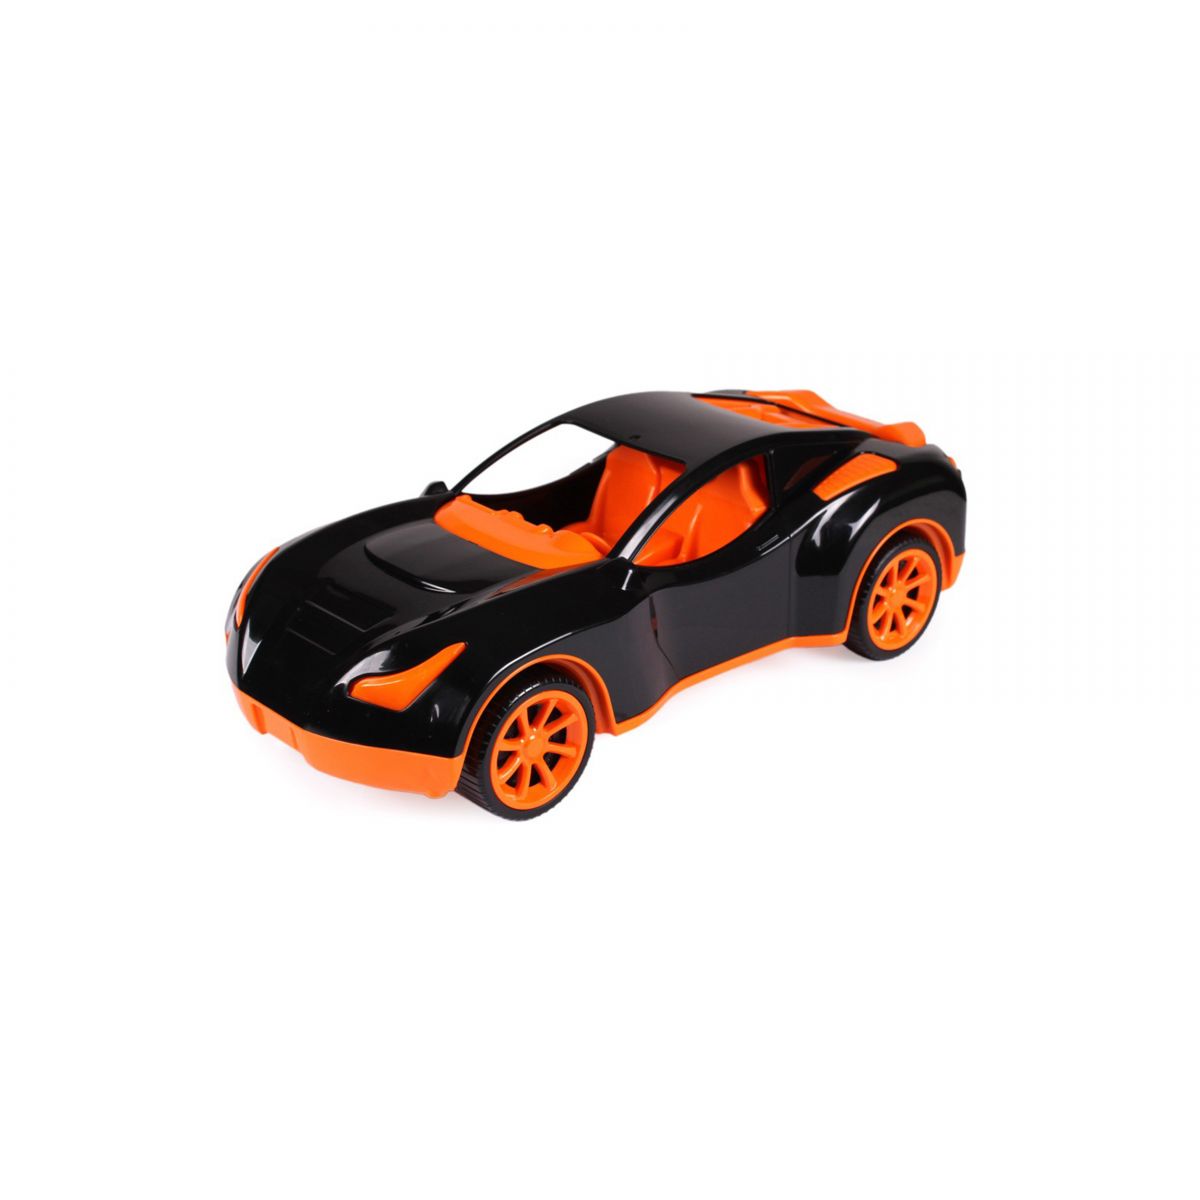 Пластиковая спортивная машина черно-оранжевая Технок (6139)